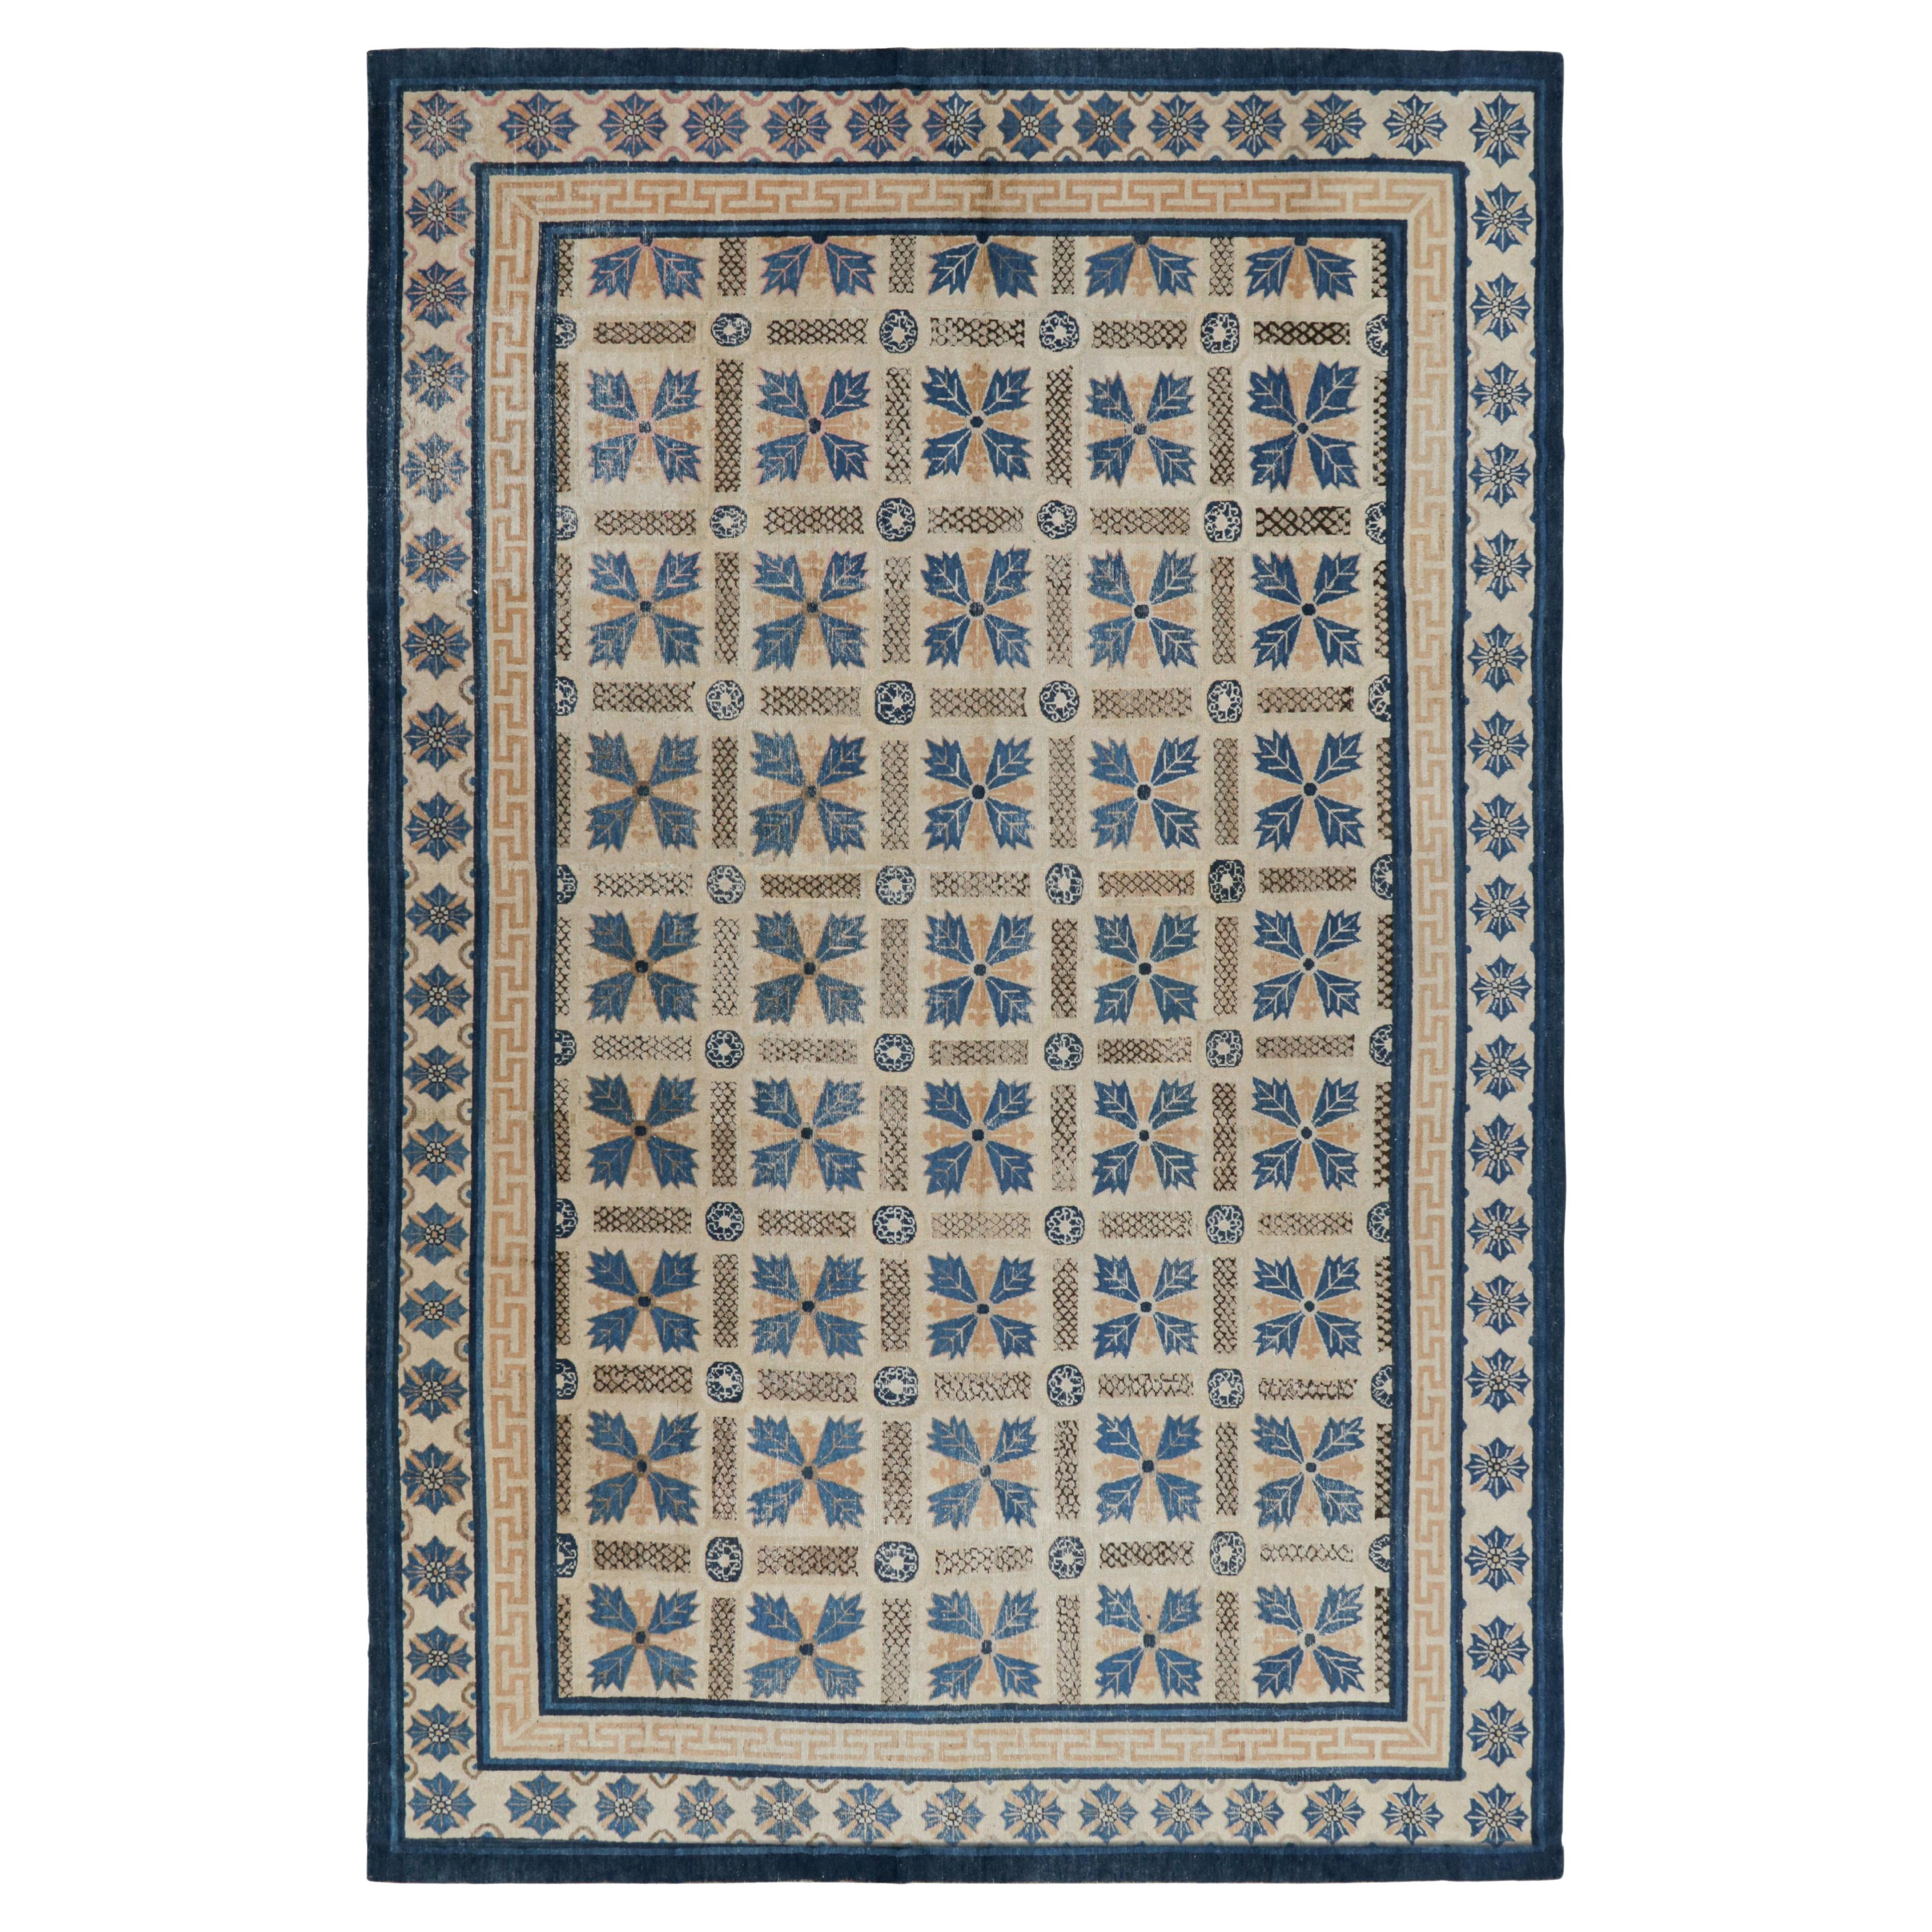 Antiker Ningxia-Teppich in Beige-Braun und Blau mit Blumenmustern